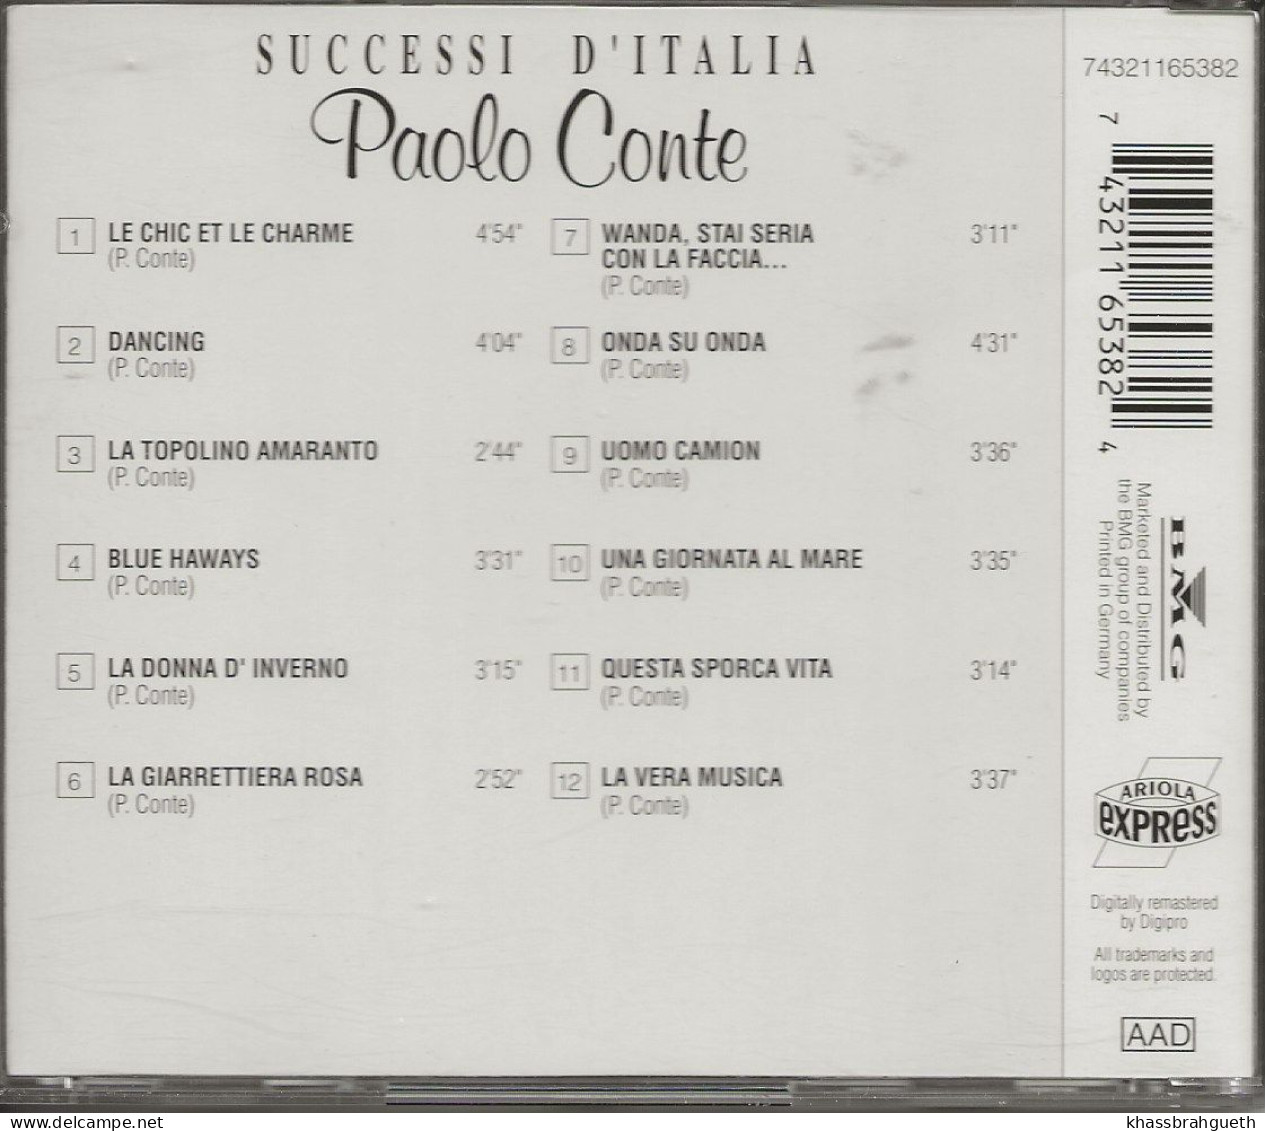 PAOLO CONTE - SUCCESSI D'ITALIA - ARIOLA (1993) (CD ALBUM) - Otros - Canción Italiana